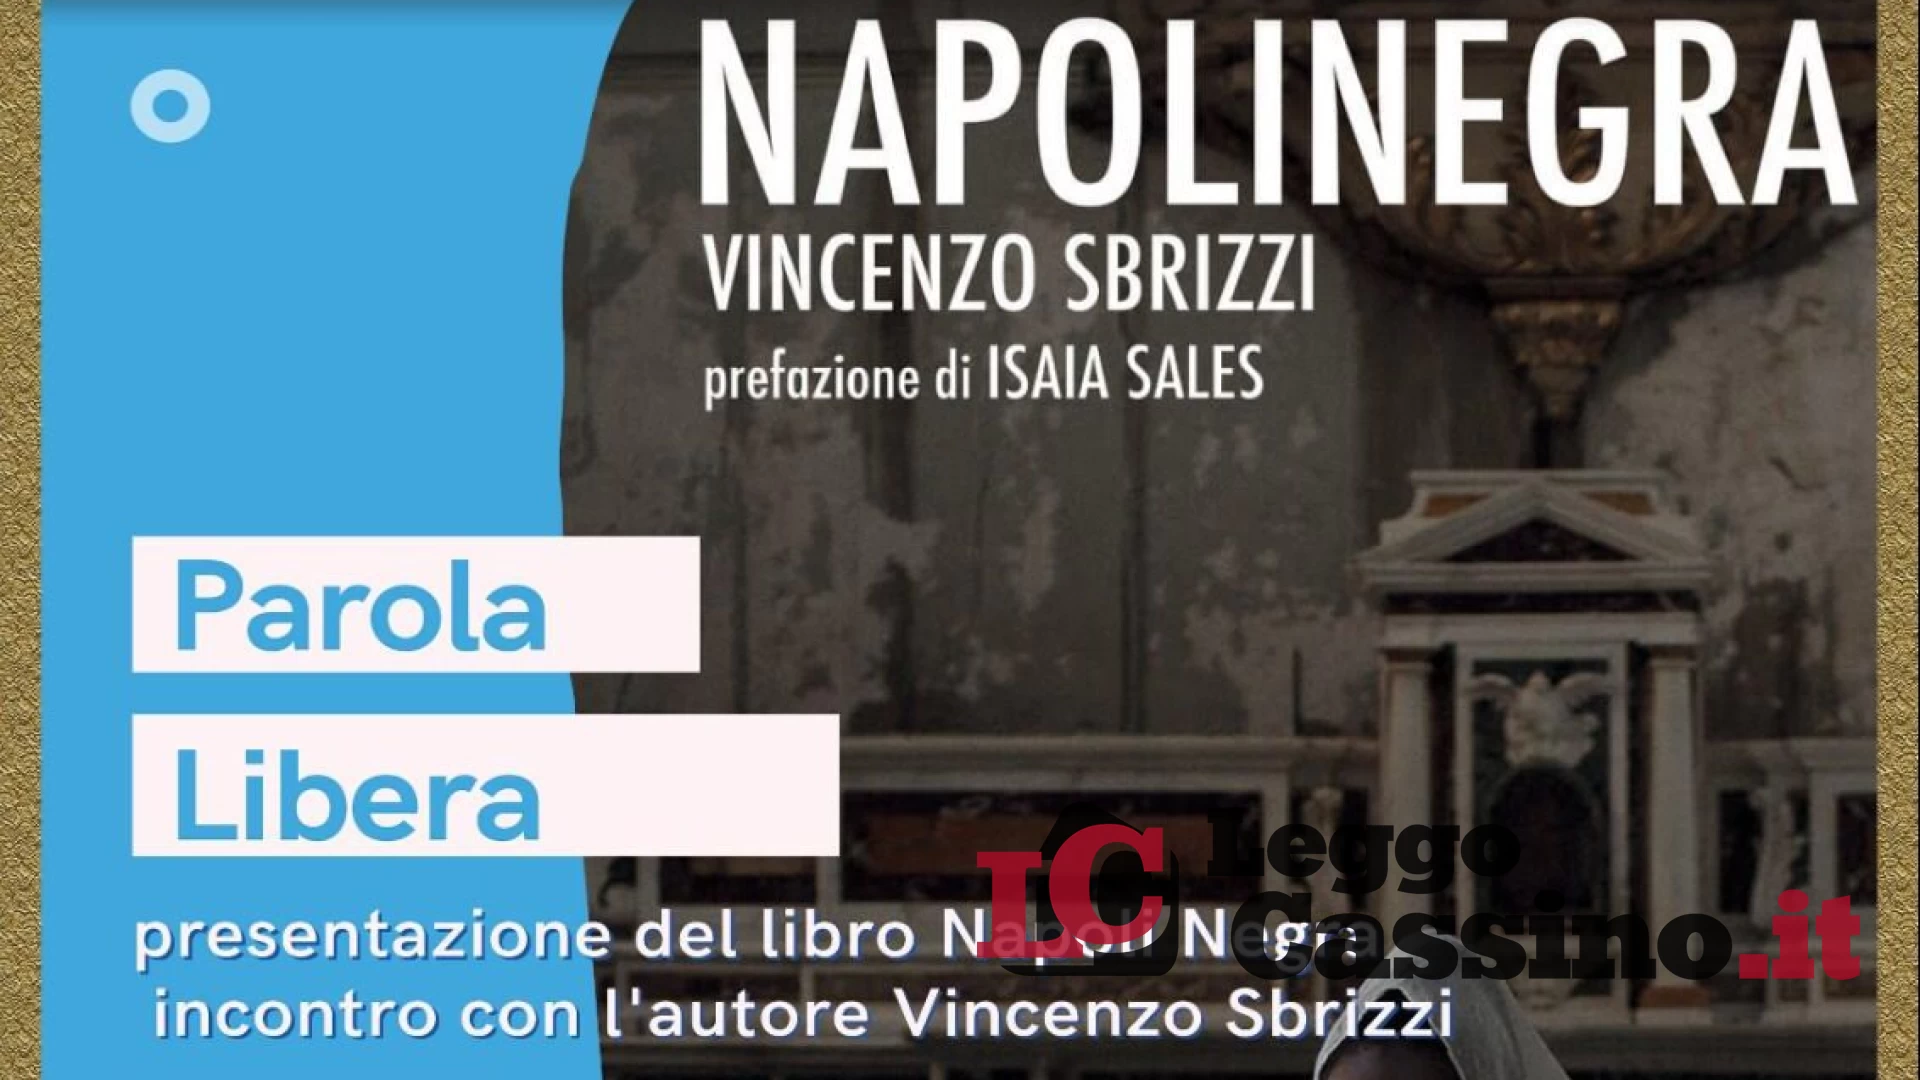 Vincenzo Sbrizzi presenza "Napoli negra" al Manzoni